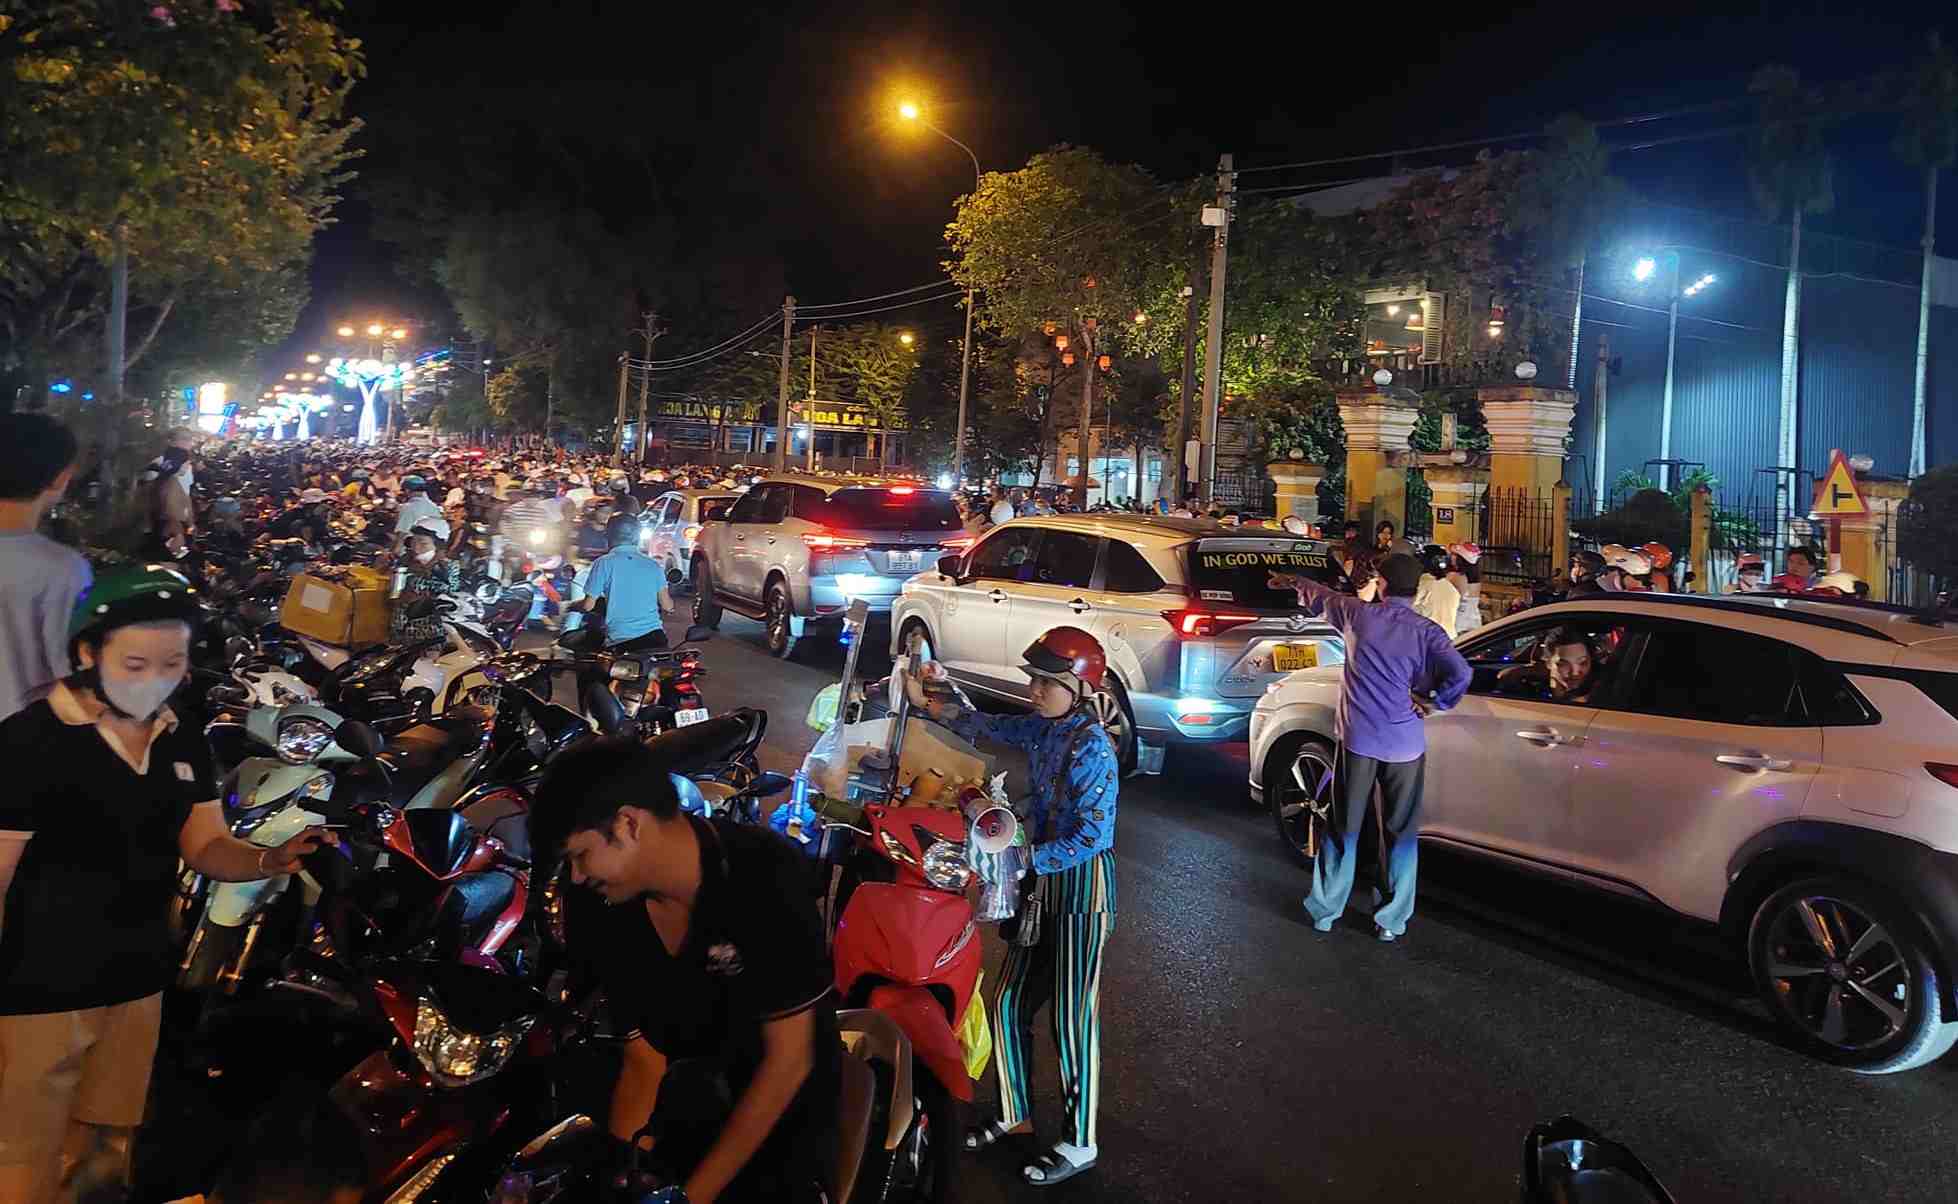 Hàng ngàn người đổ về đi xem biểu diễn nhạc nước. Người dân để xe máy ngay dưới lòng đường.